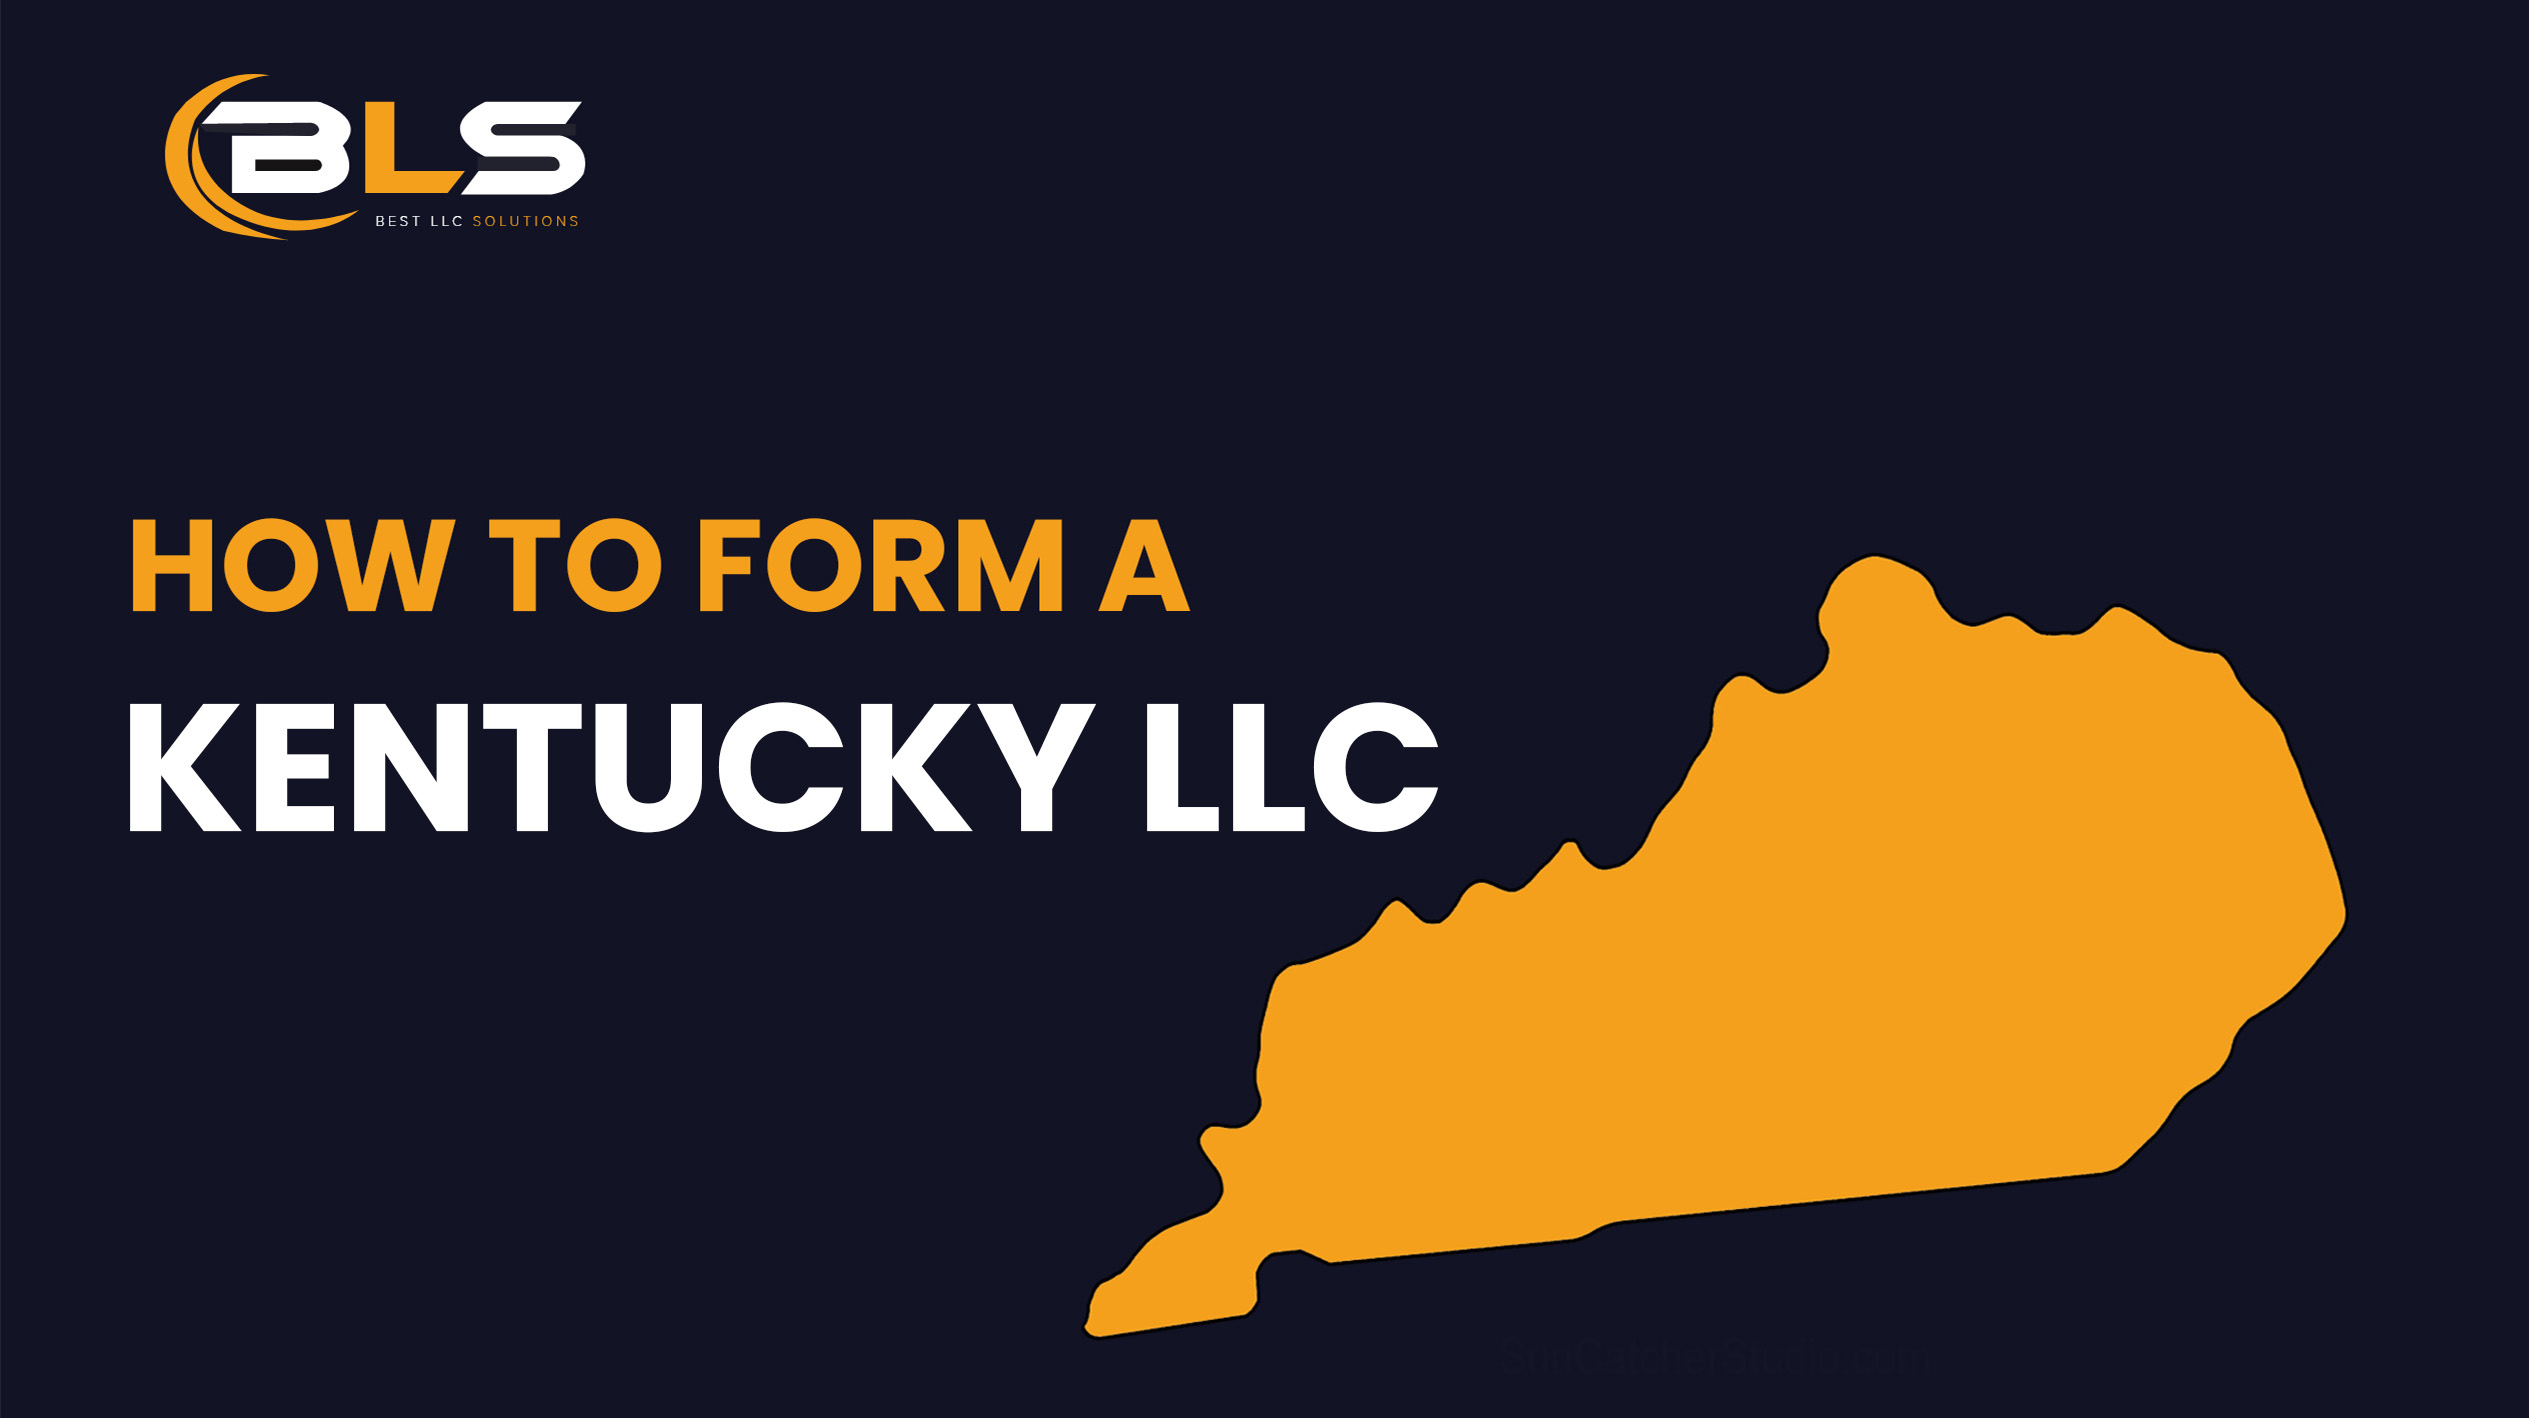 Kentucky LLC